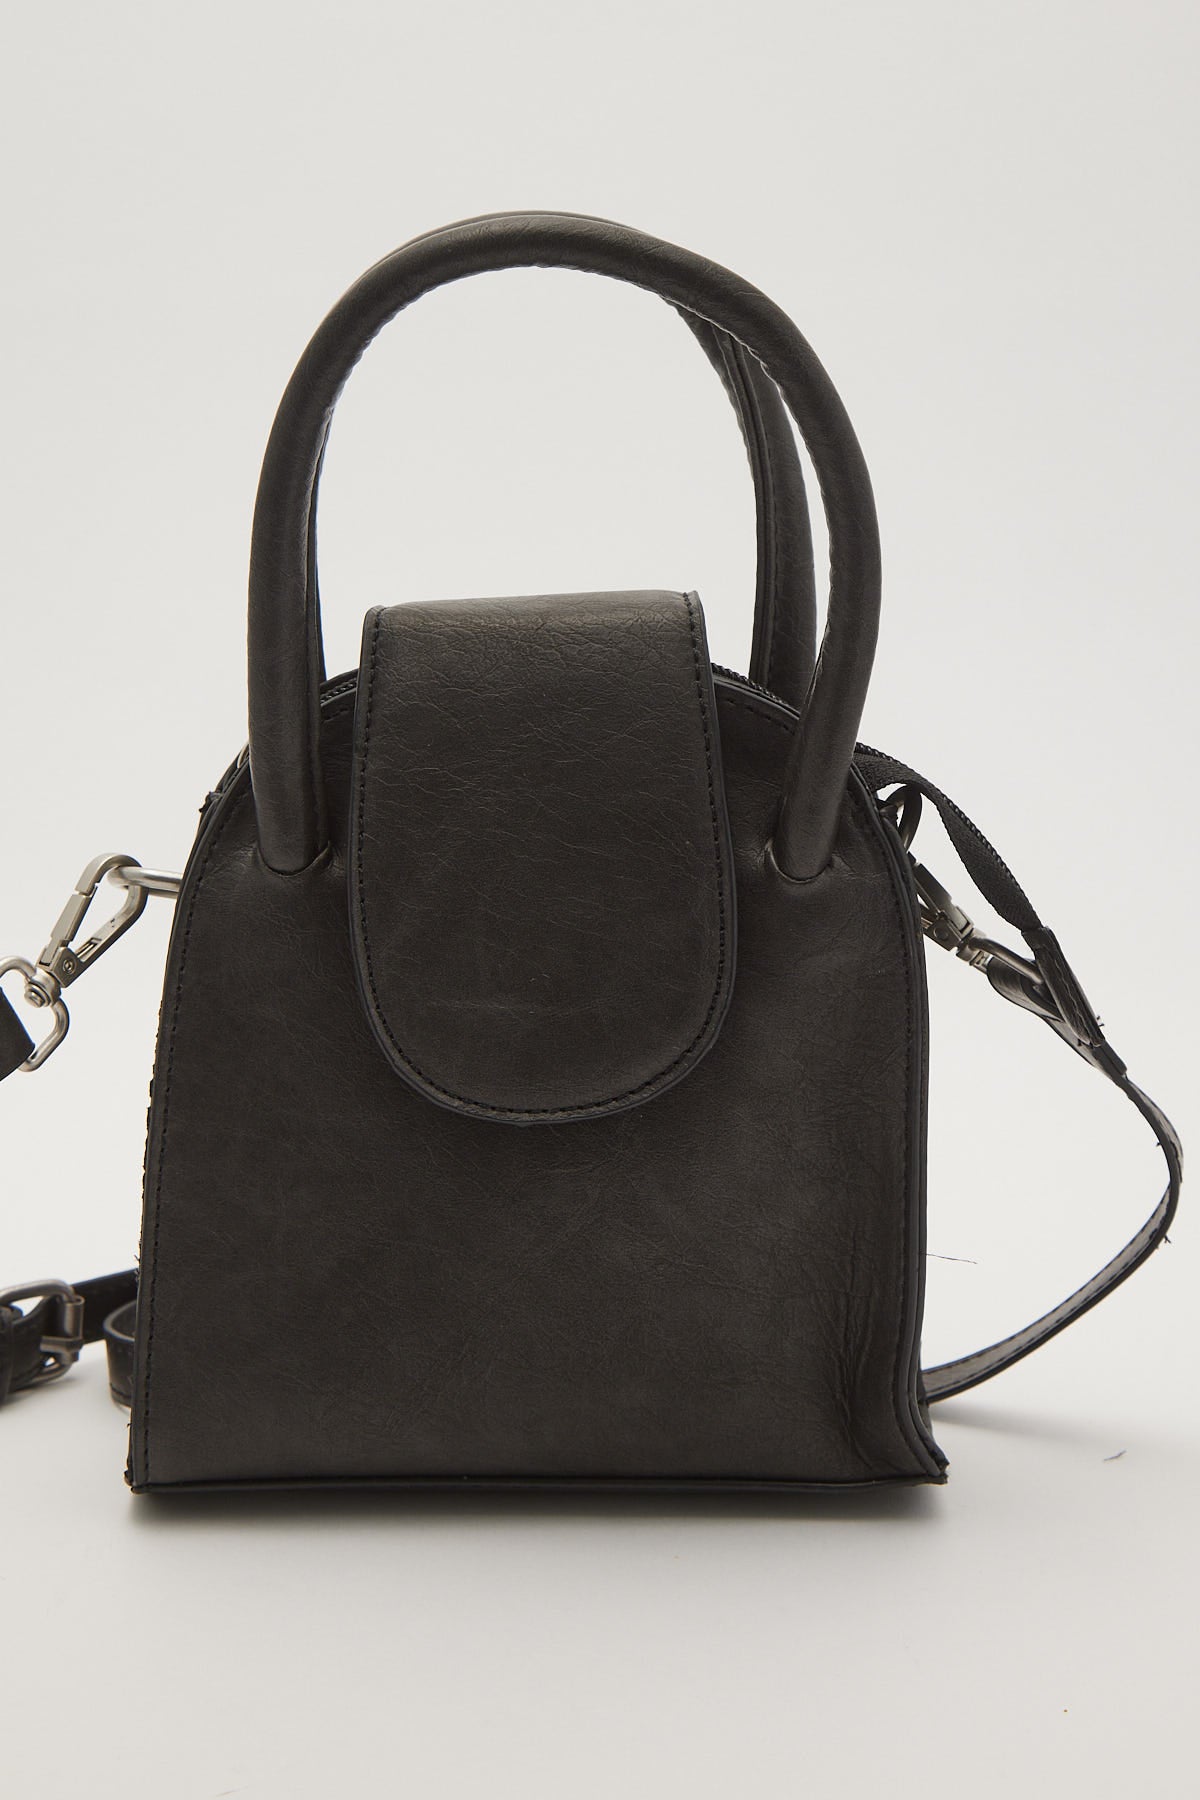 Token Elle Bowler Bag Charcoal